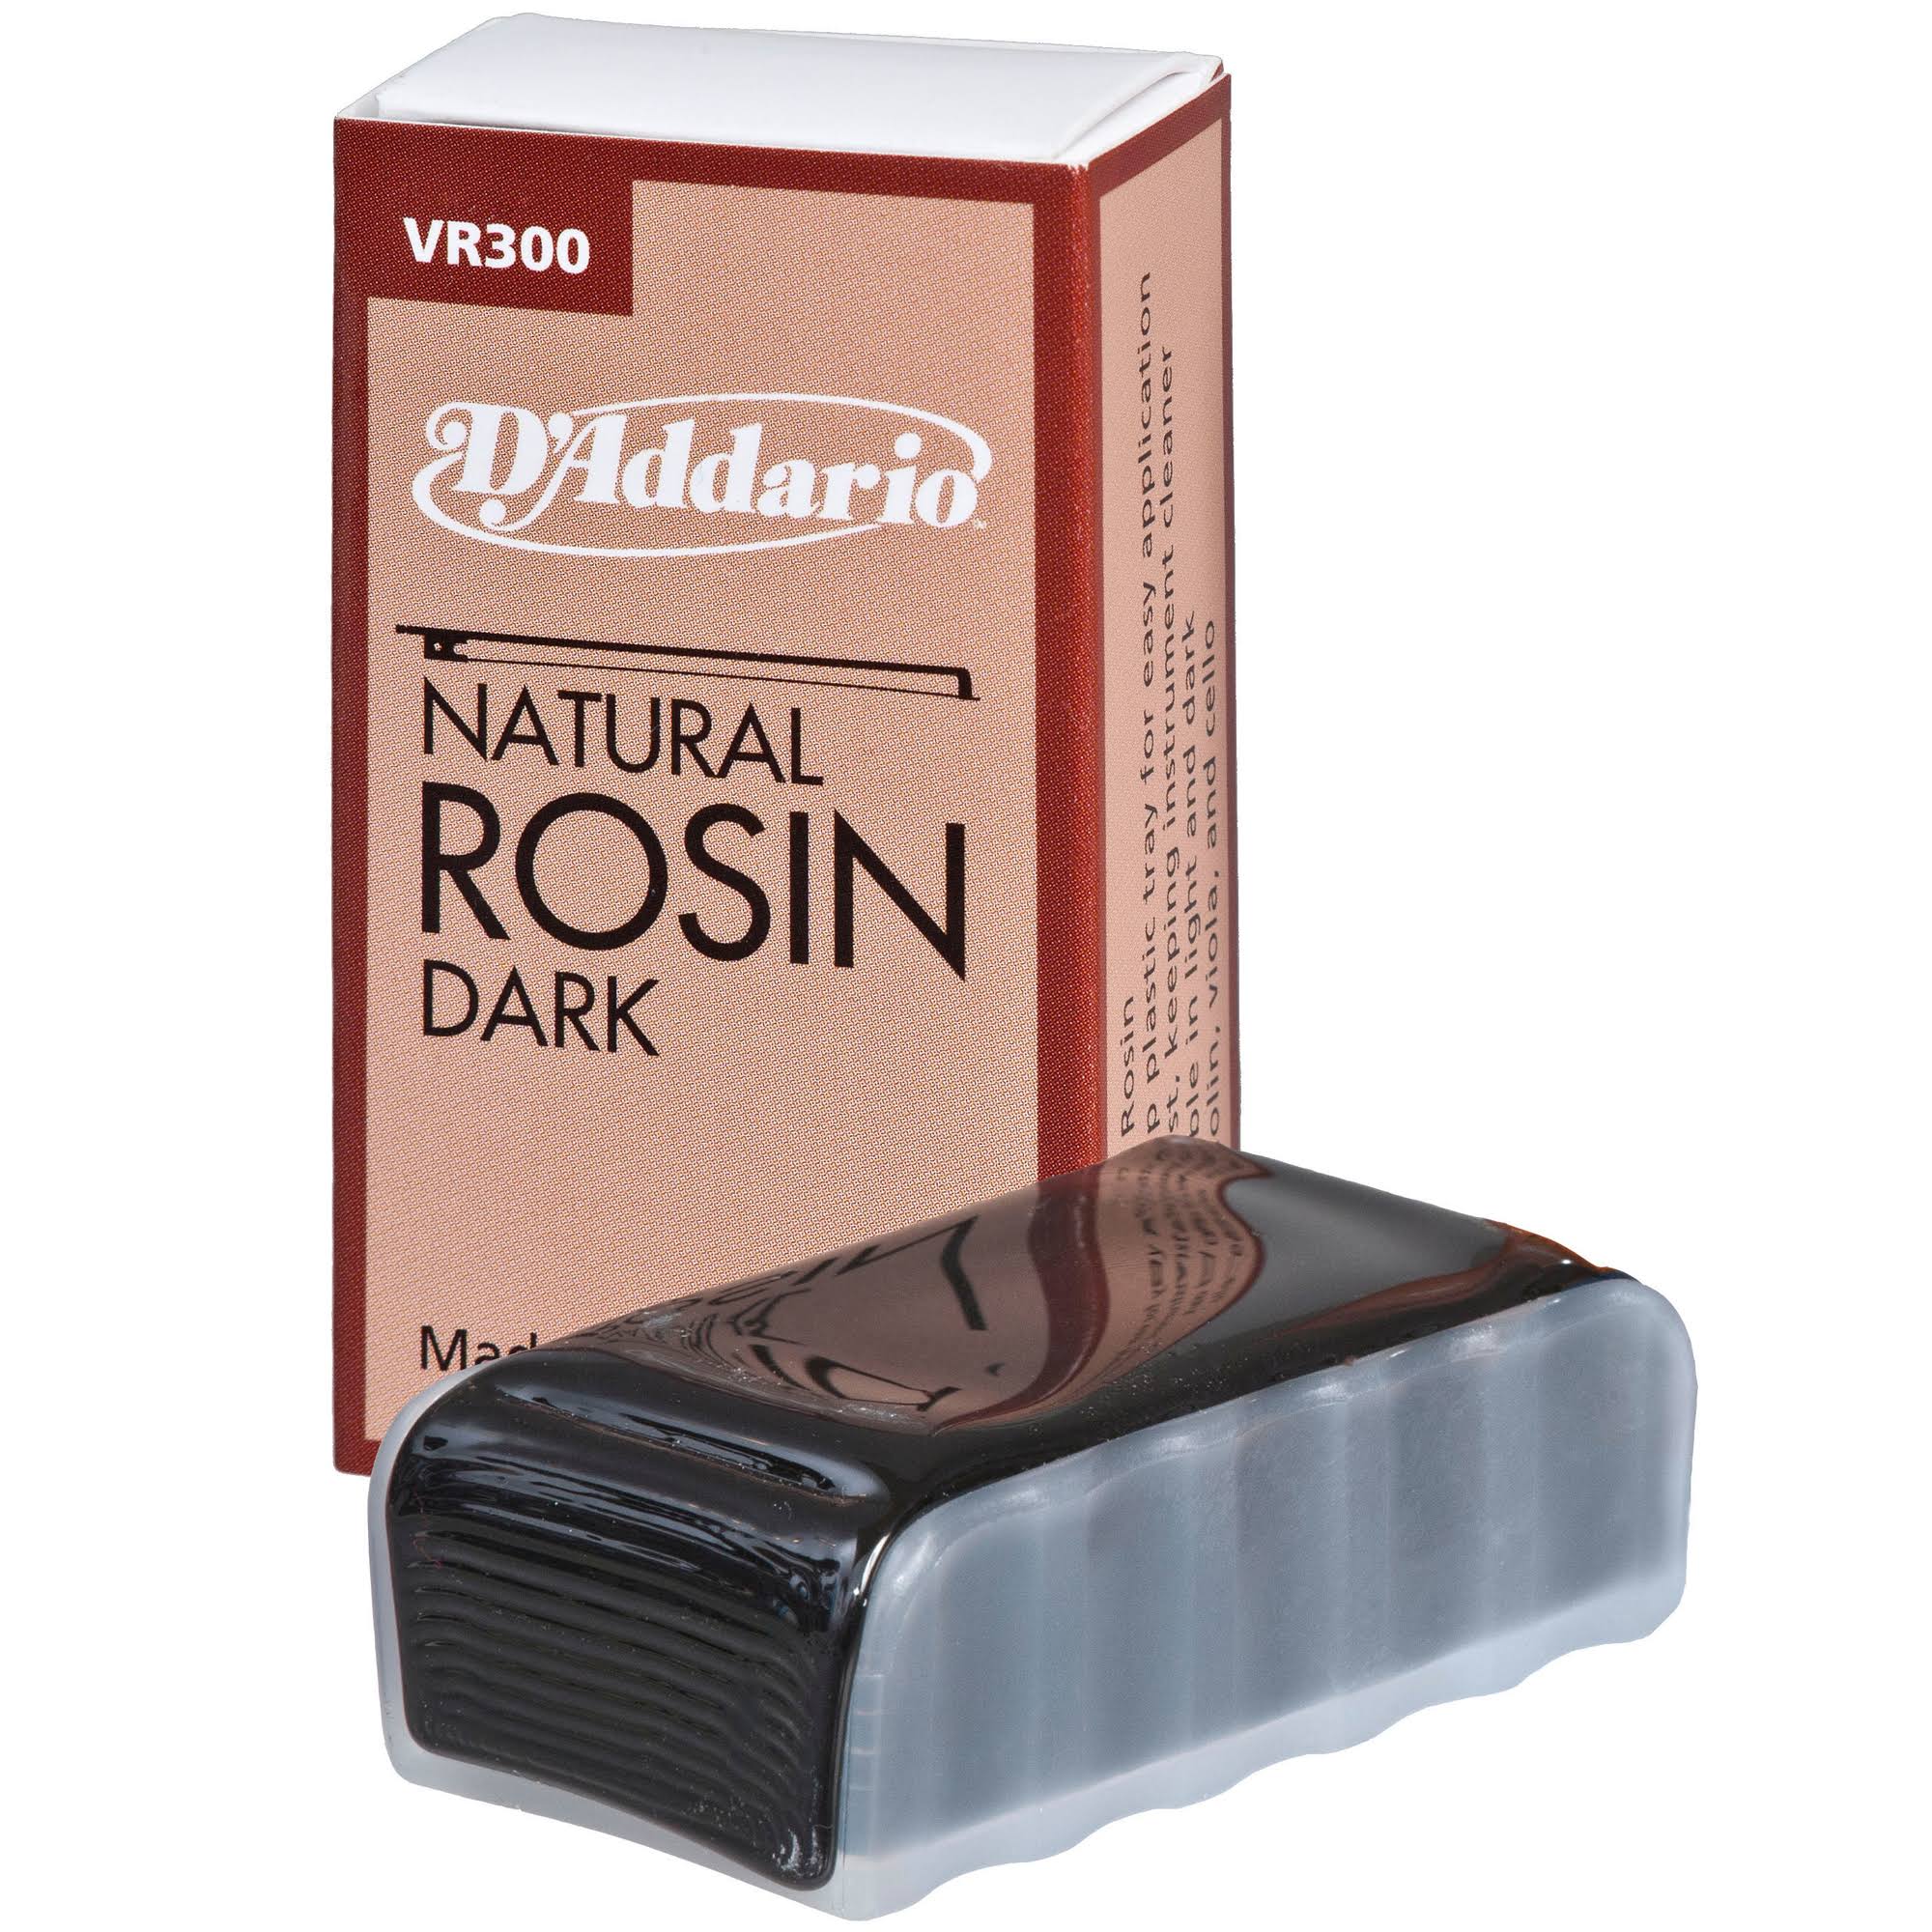 D'Addario VR300 Natural Rosin - Dark Tray, for Hair Bows